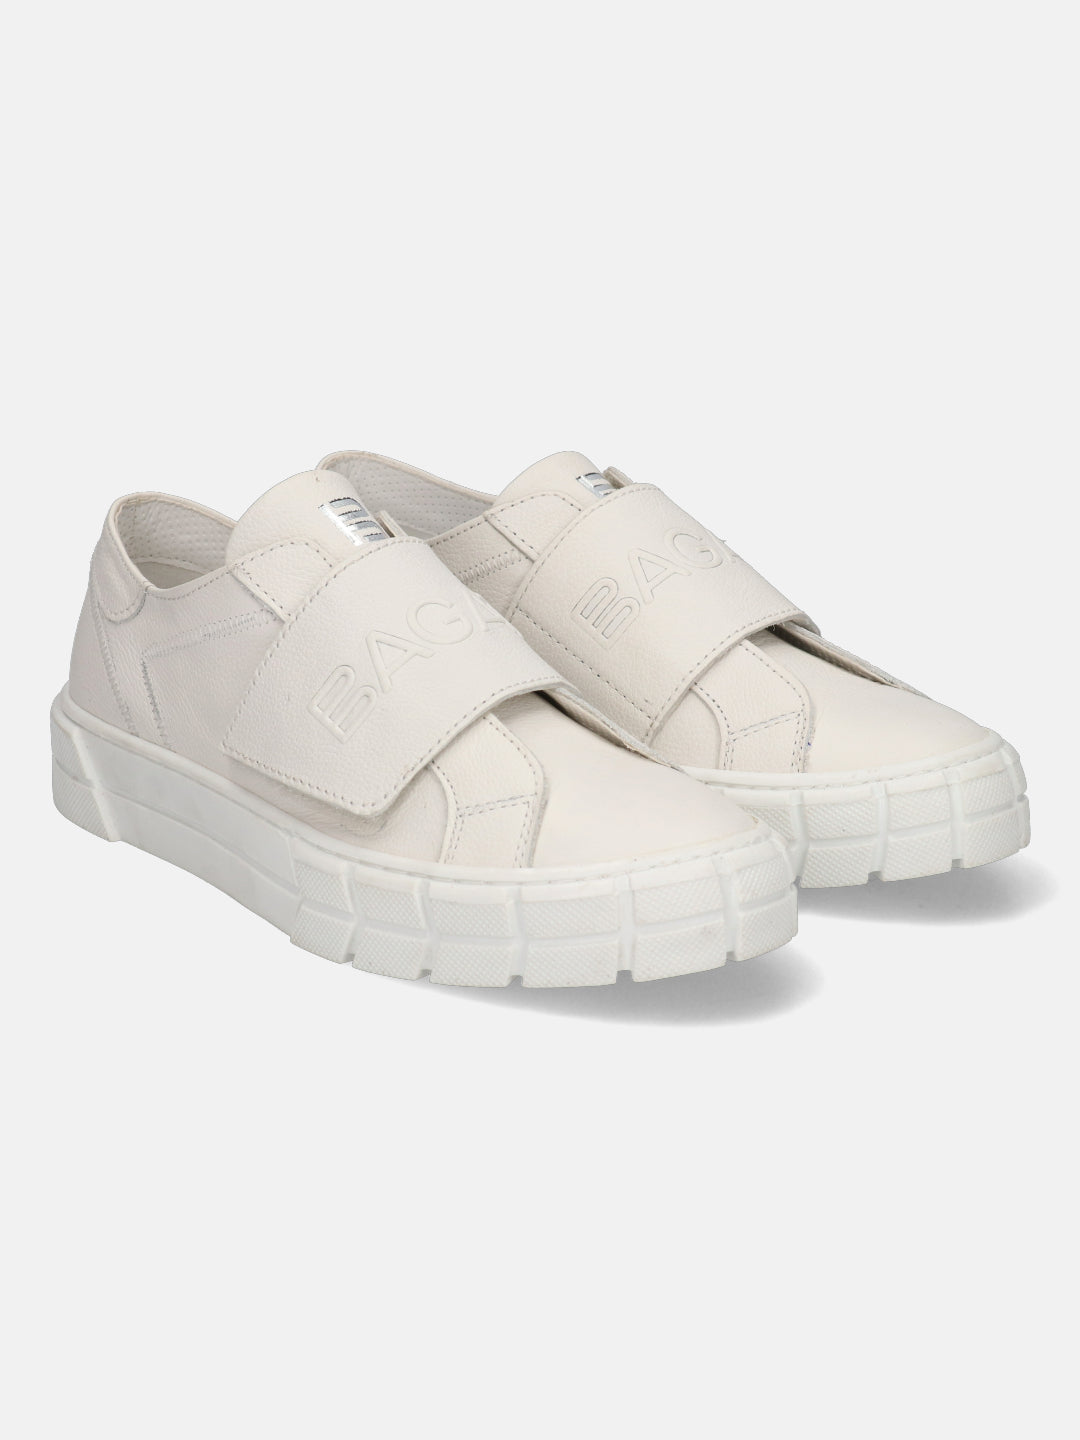 Tia White Sneakers - BAGATT